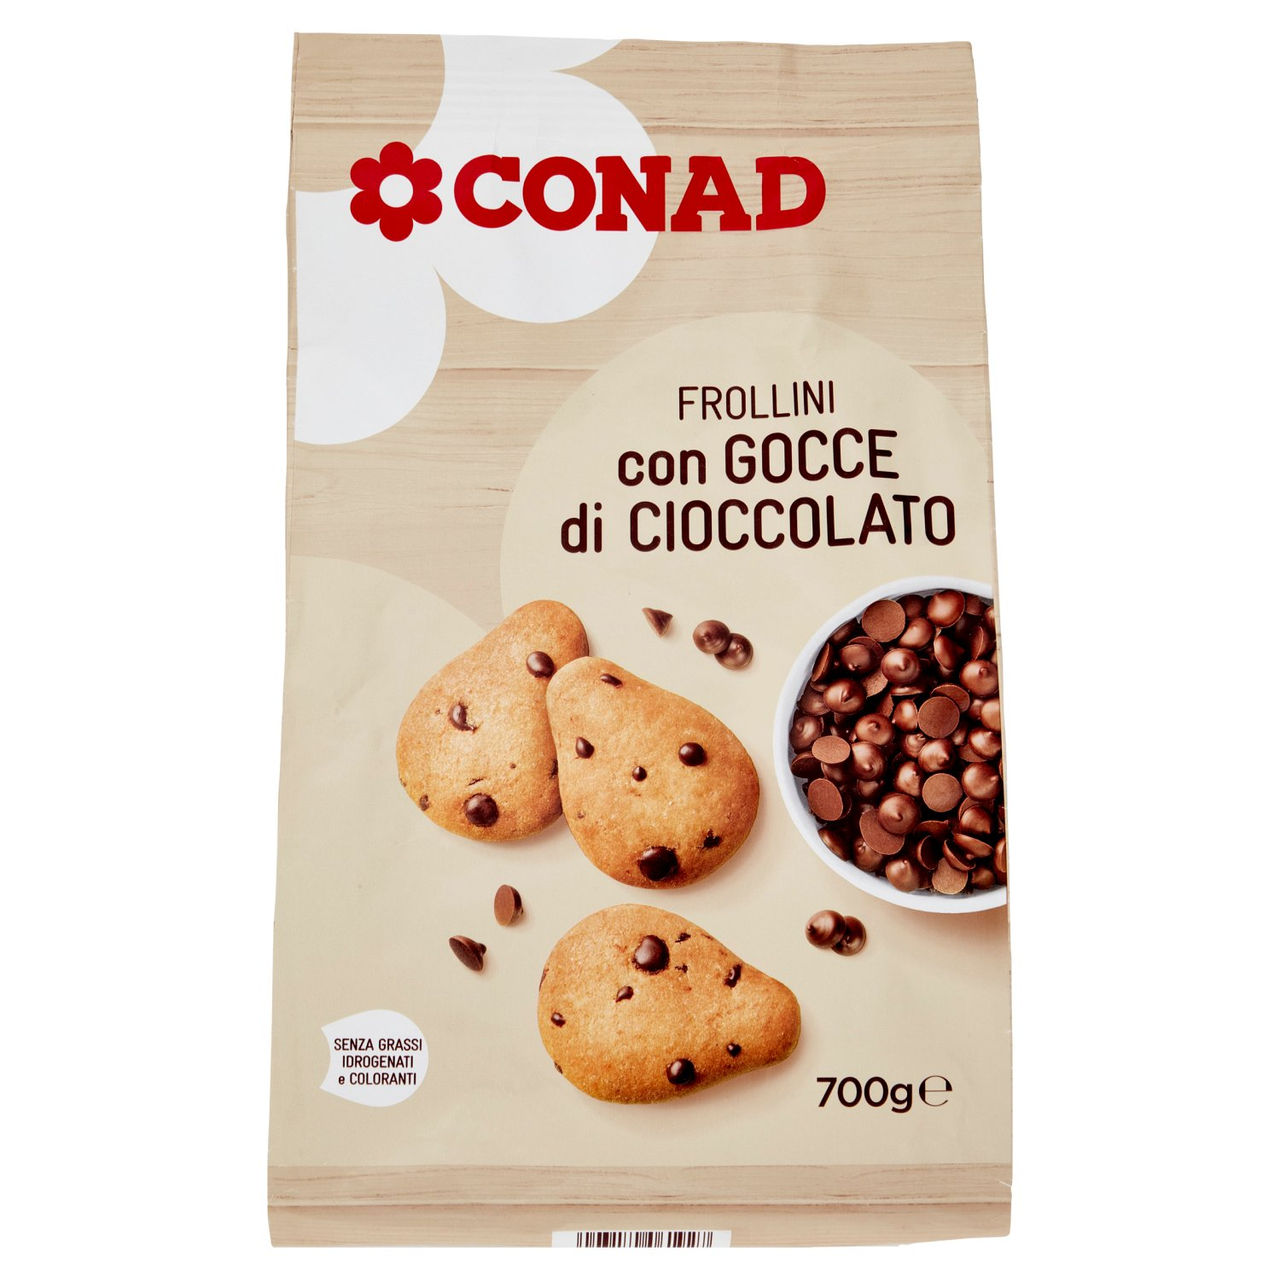 Frollini con Gocce di Cioccolato 700g Conad online